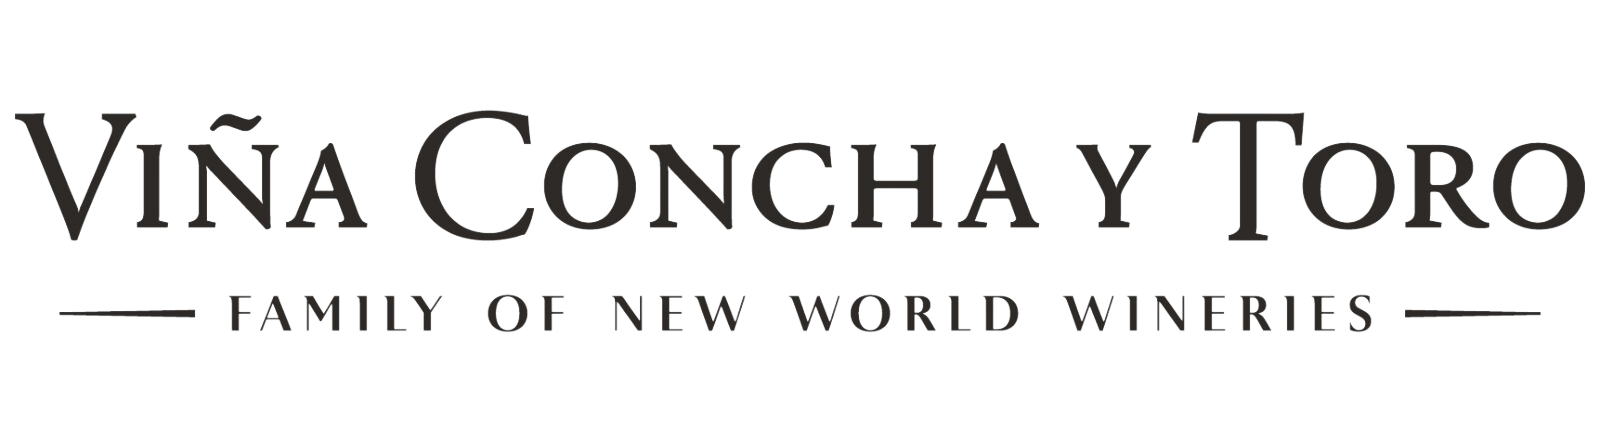 logo-sponsor-concha